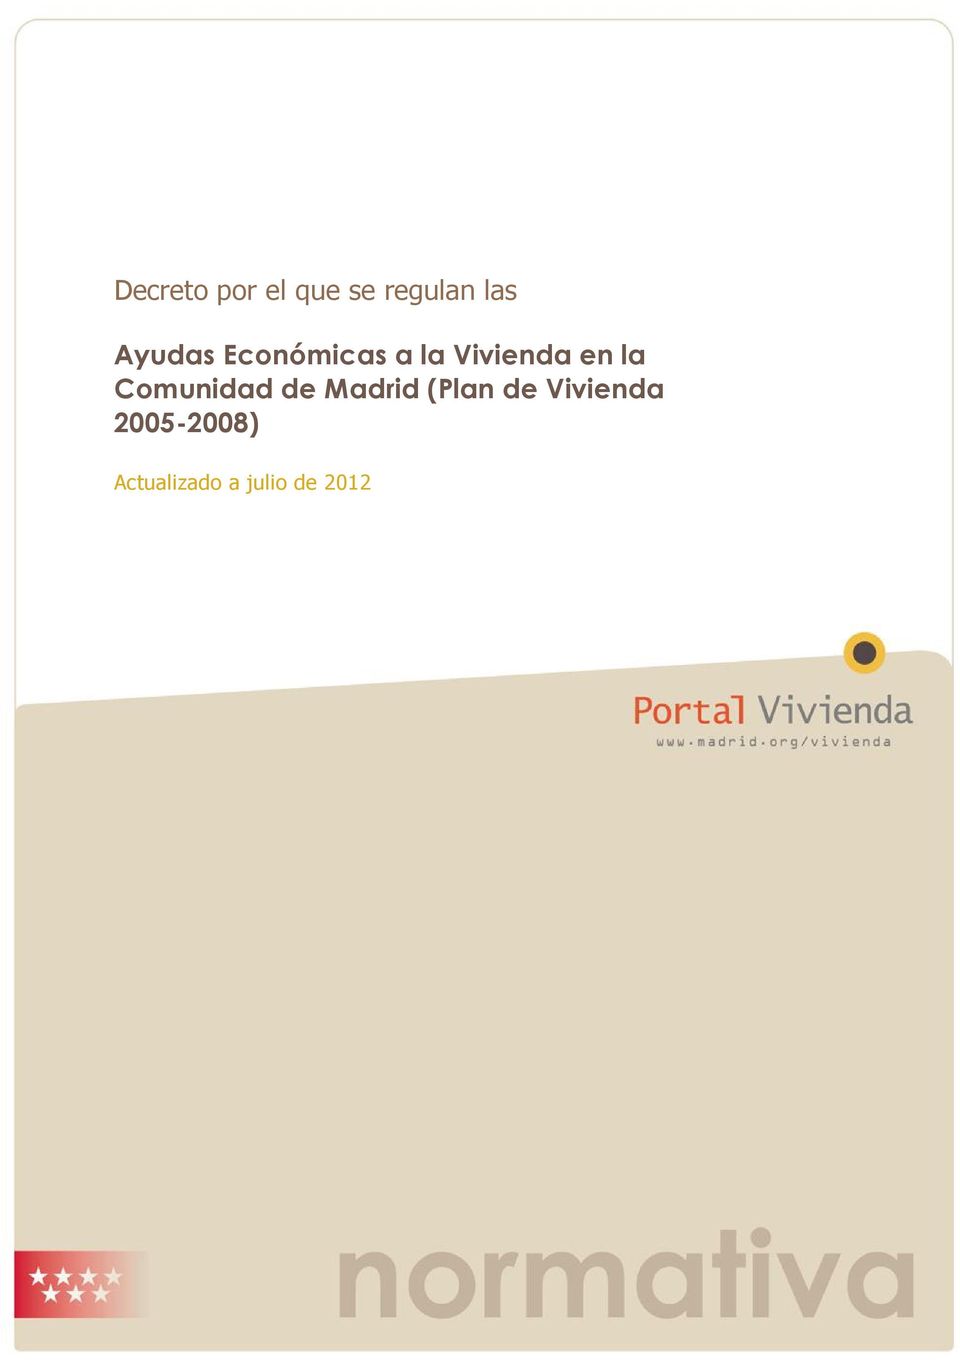 la Comunidad de Madrid (Plan de